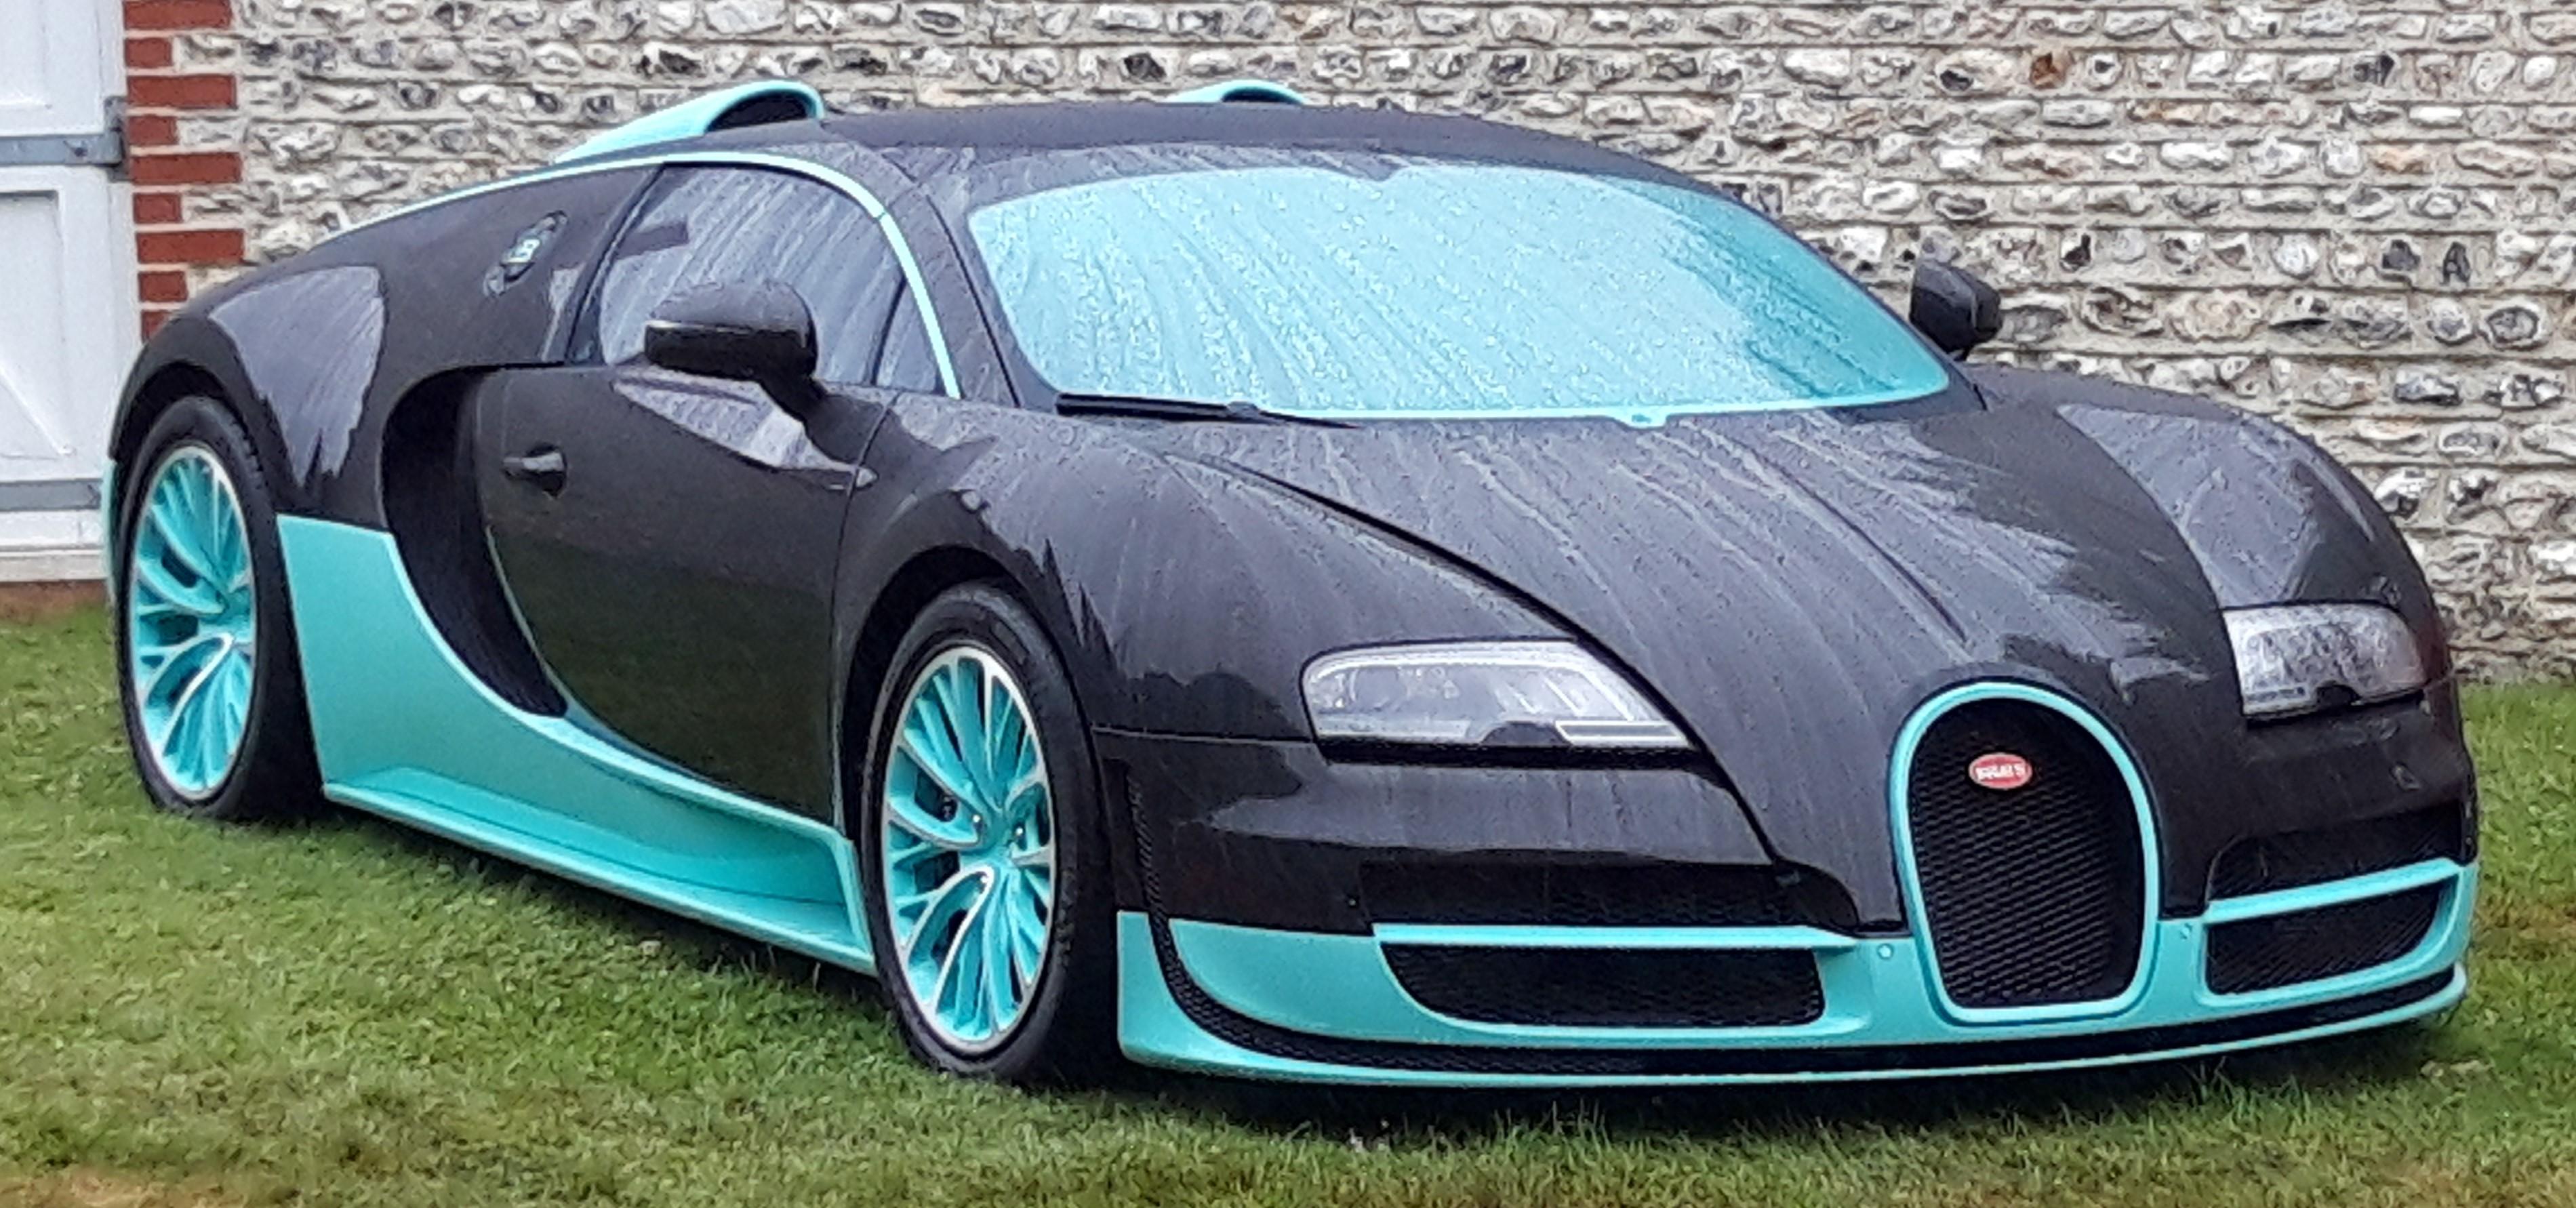 Veyron image